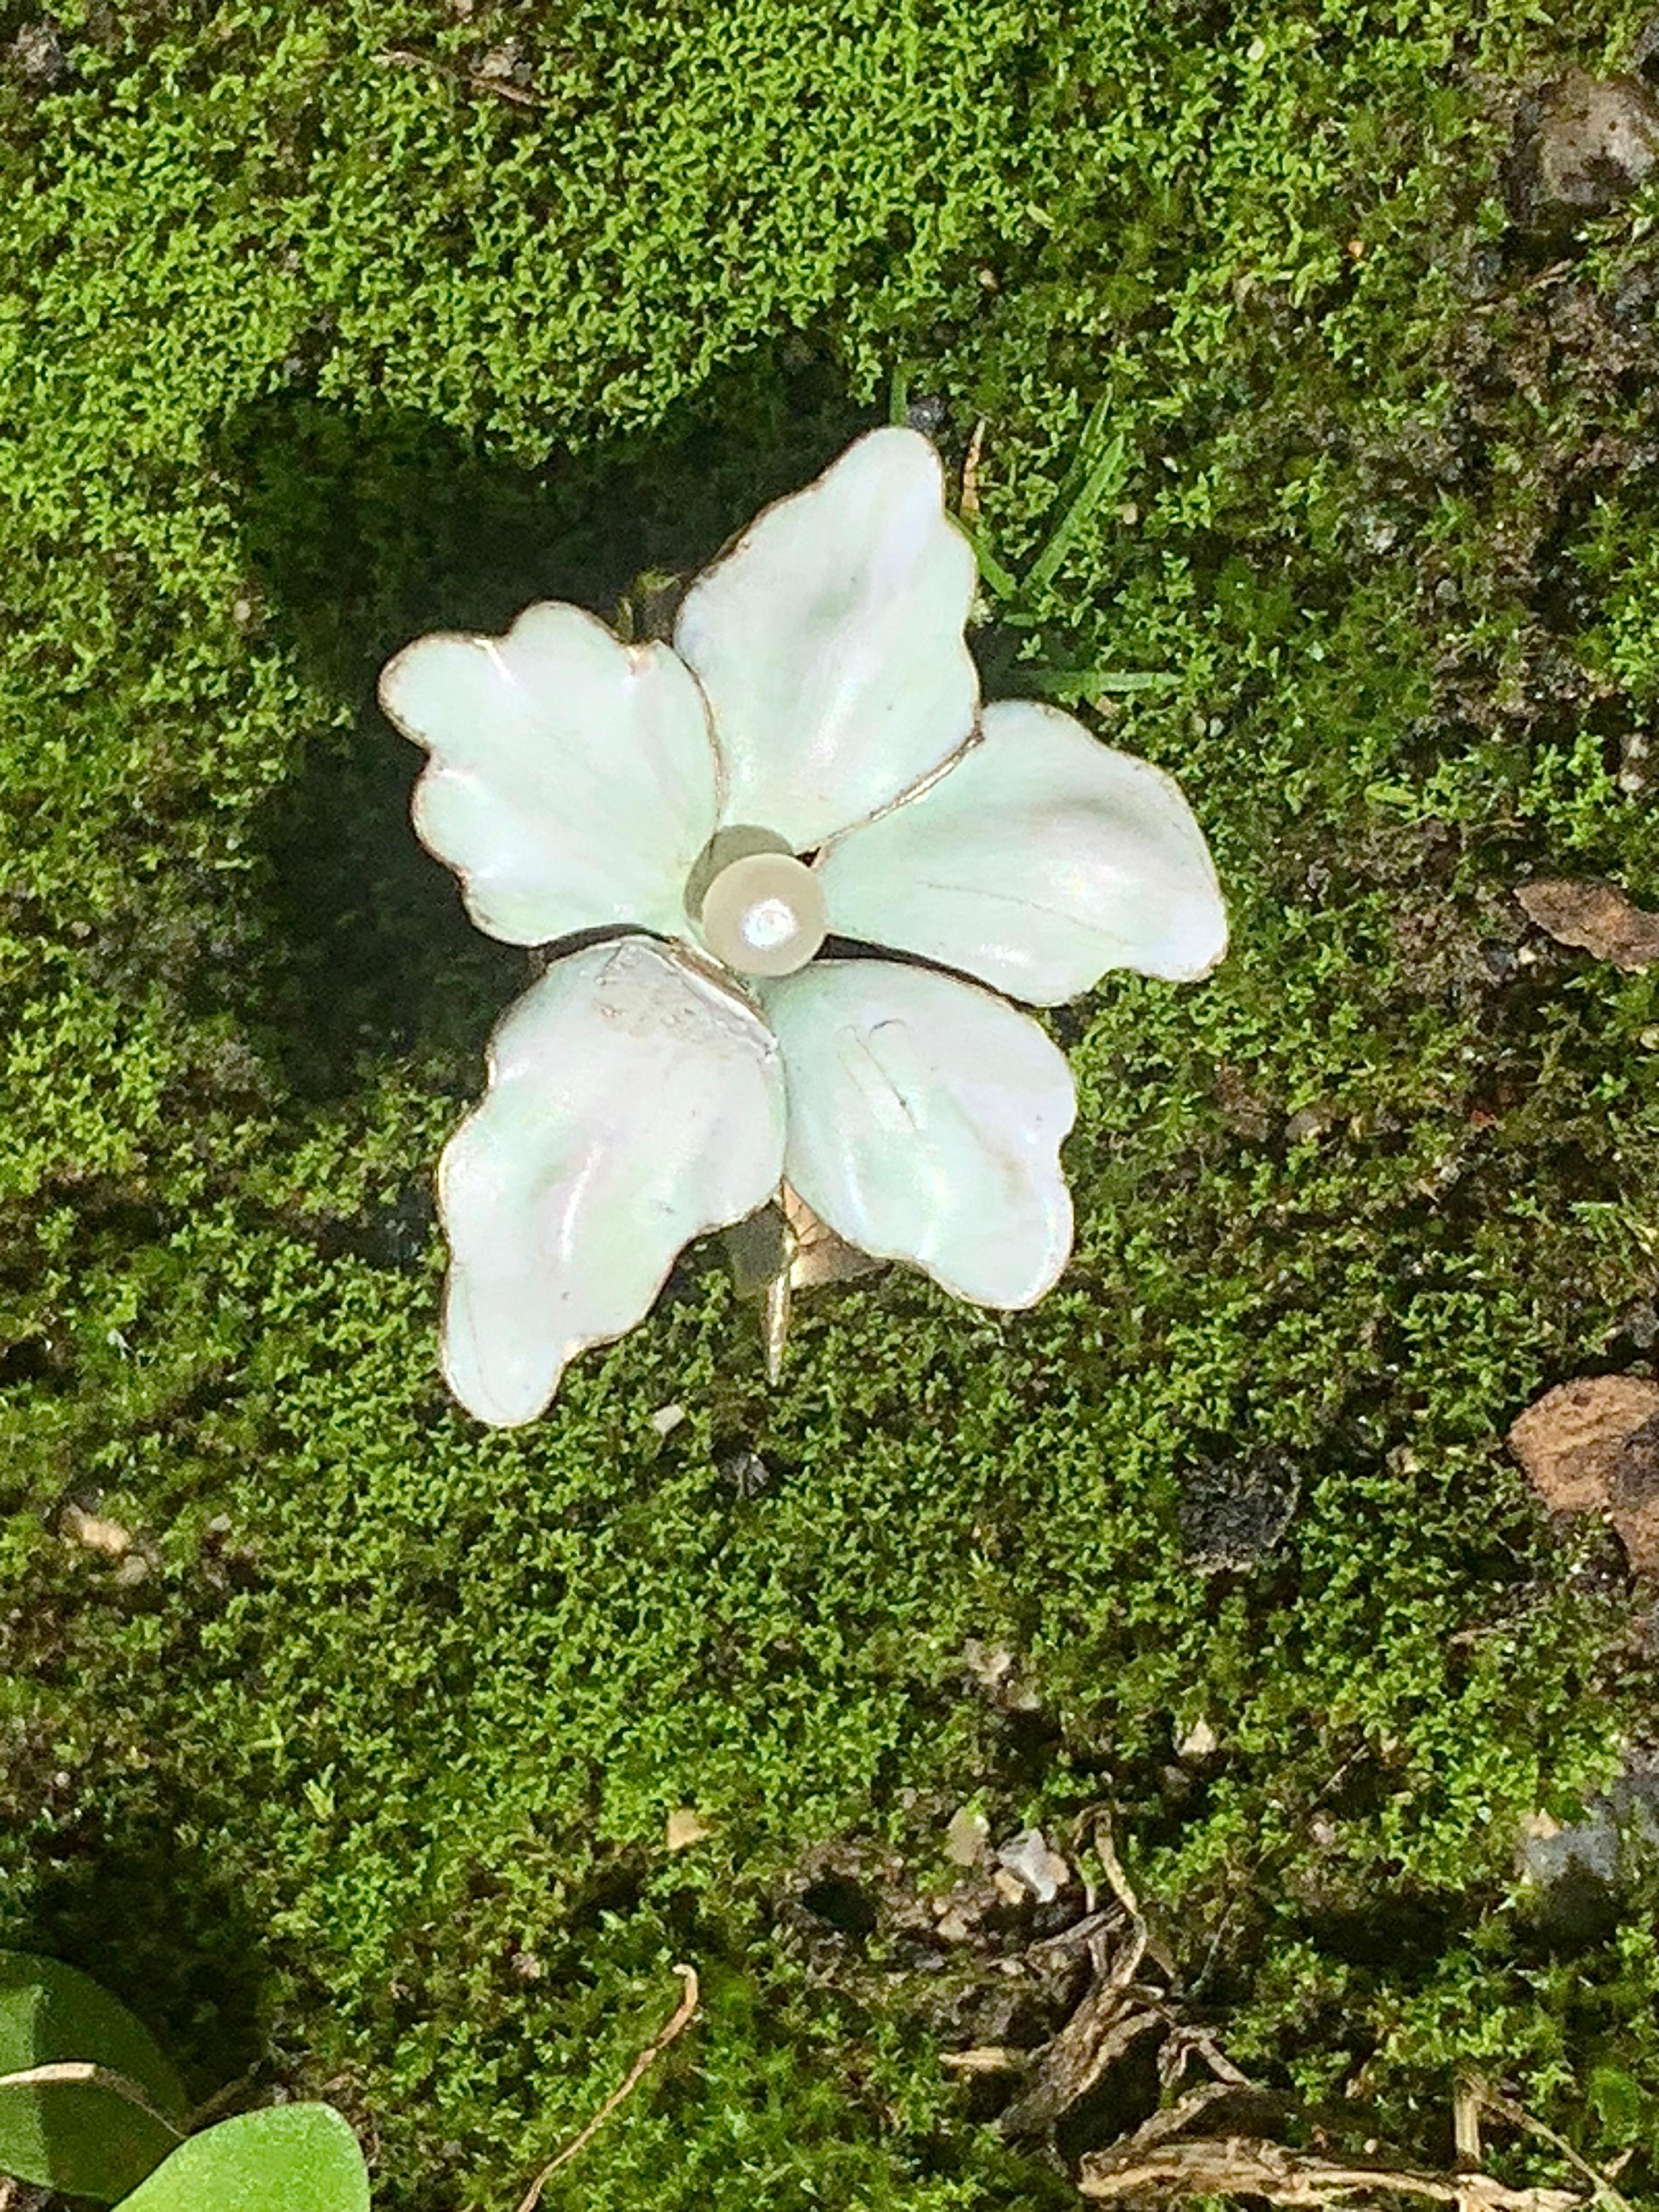 Diese zarte Brosche ist in Form einer Blume, einer kleinen weißen Lilie, gestaltet. Das kleine Juwel wurde um 1900 - 1905 geschaffen und besteht aus 14 Karat Gold. Die Blütenblätter sind mit opak-weißer Emaille überzogen, mit einigen rosafarbenen